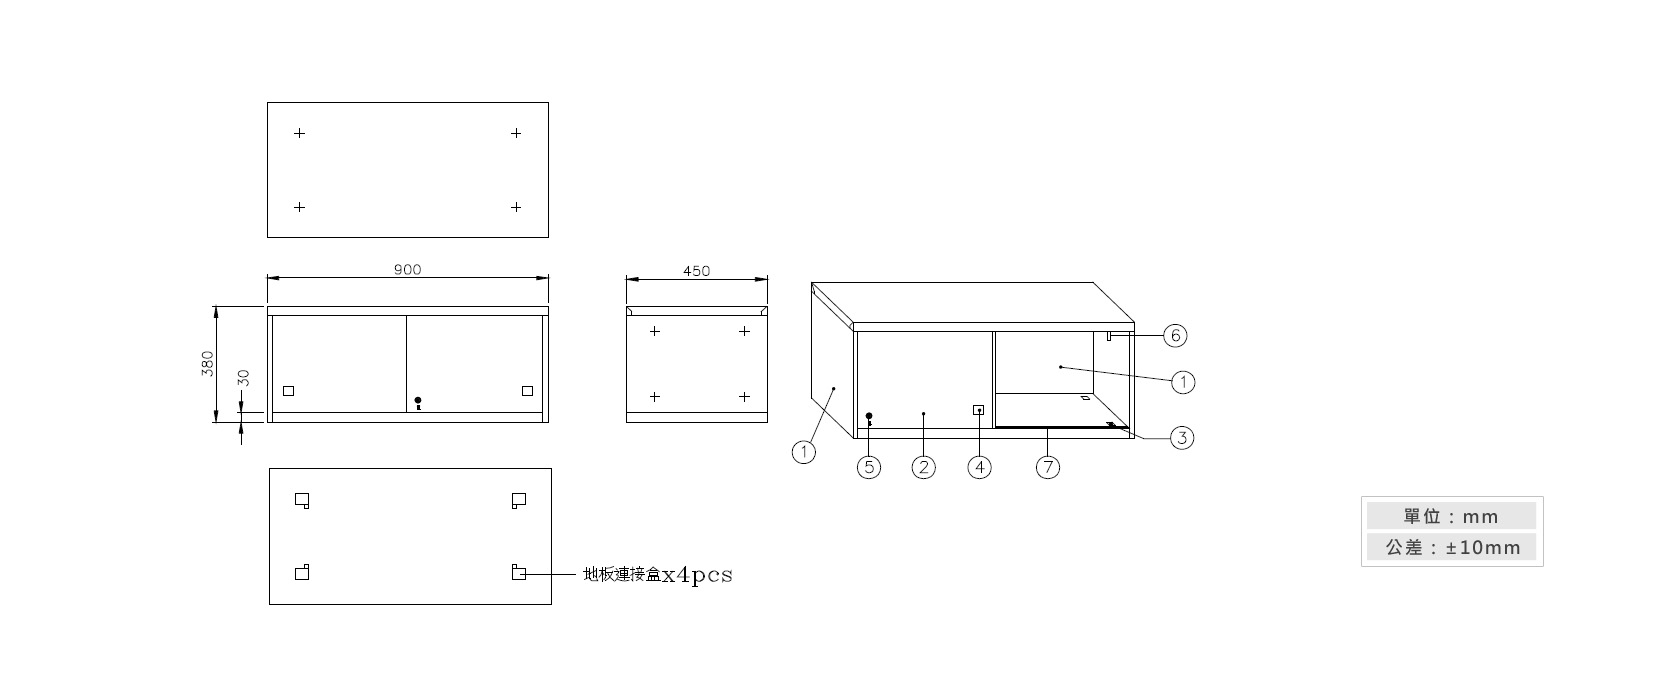 3-12鐵拉門上置式鋼製公文櫃材質說明